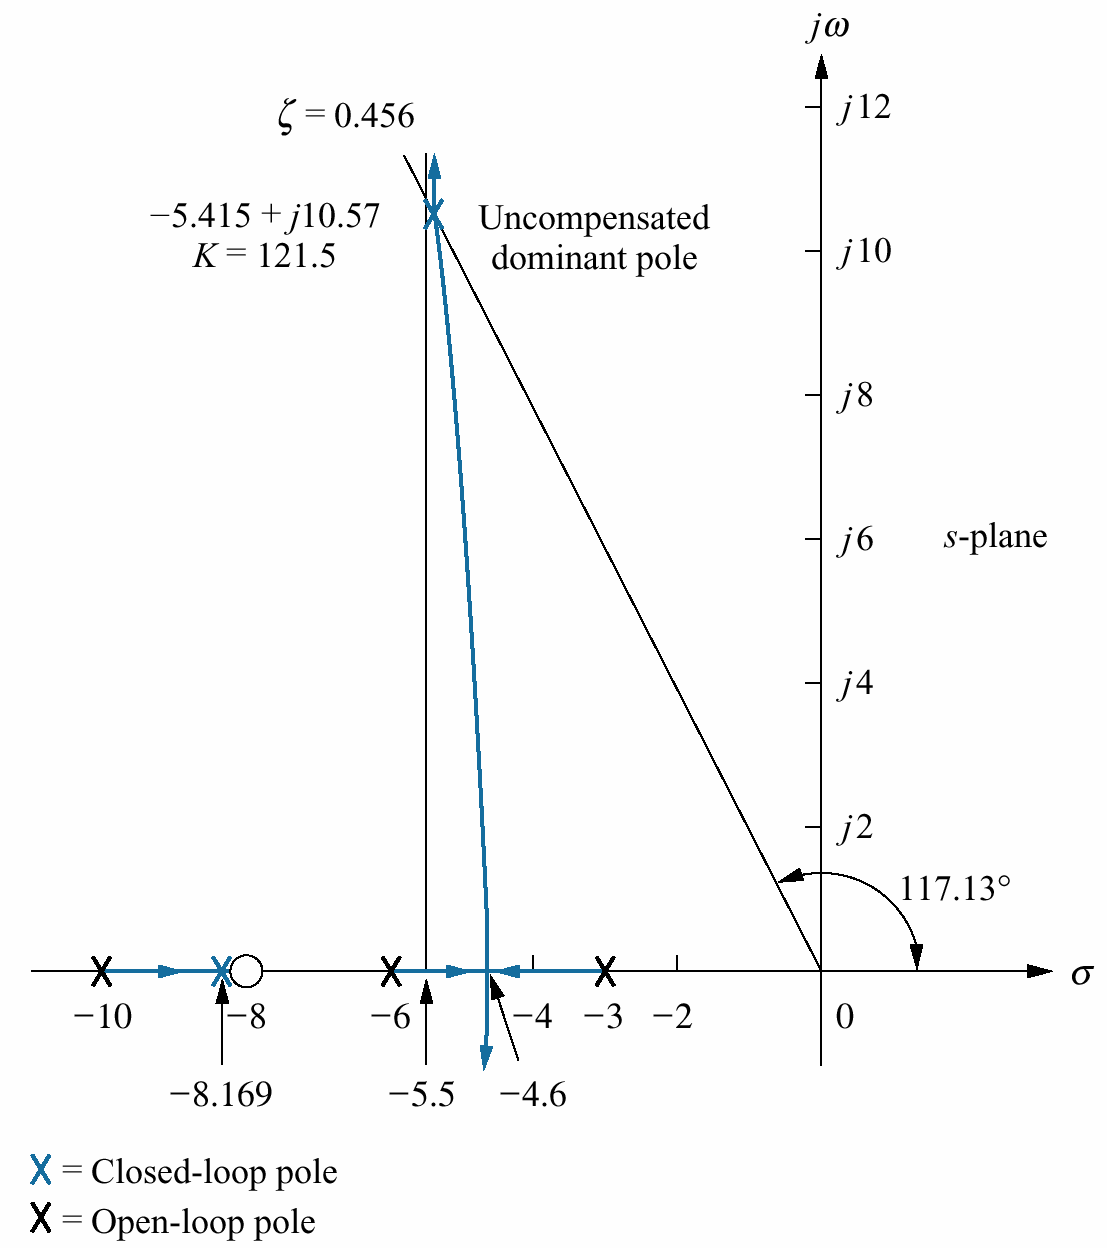 27 T pold = Π /10.57 = 0.297 Kompanze edilmiş sistemde 1 / 3 daha iyi tepe zamanı elde etmek için kompanze edilmiş sistemin baskın karmaşık kutuplarını bulmak gerekir.